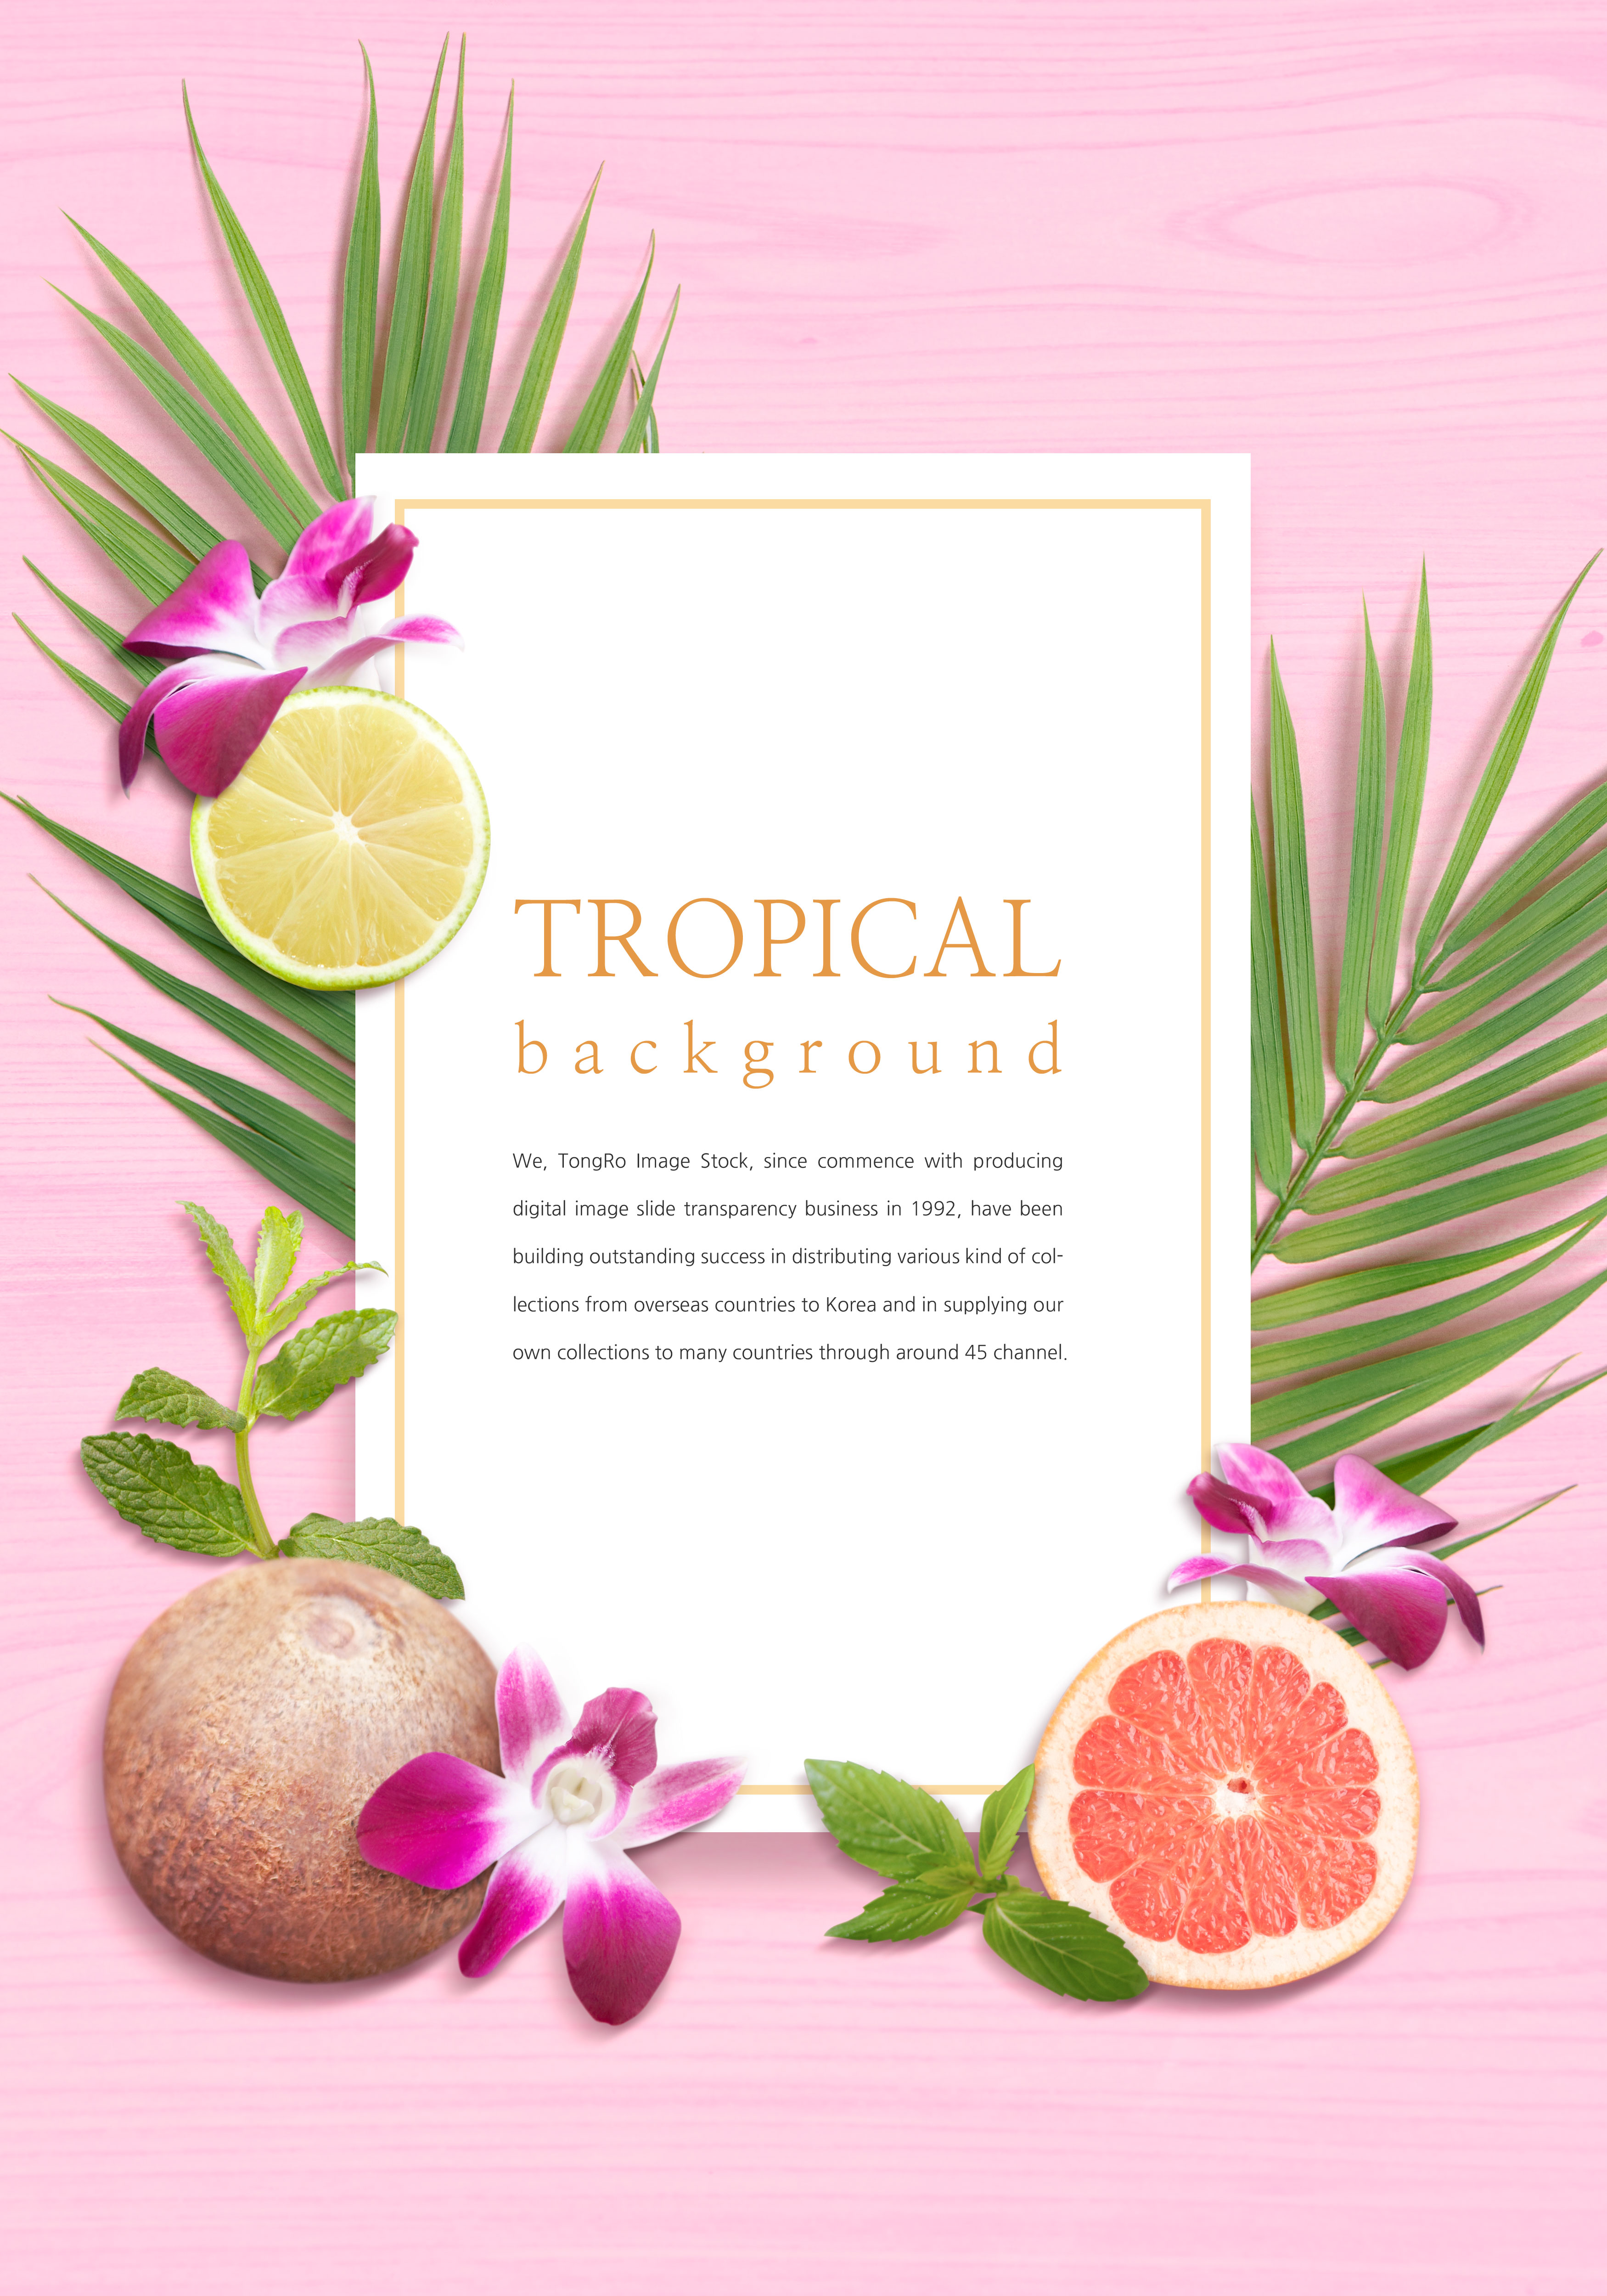 热带水果花卉主题背景图片设计素材插图